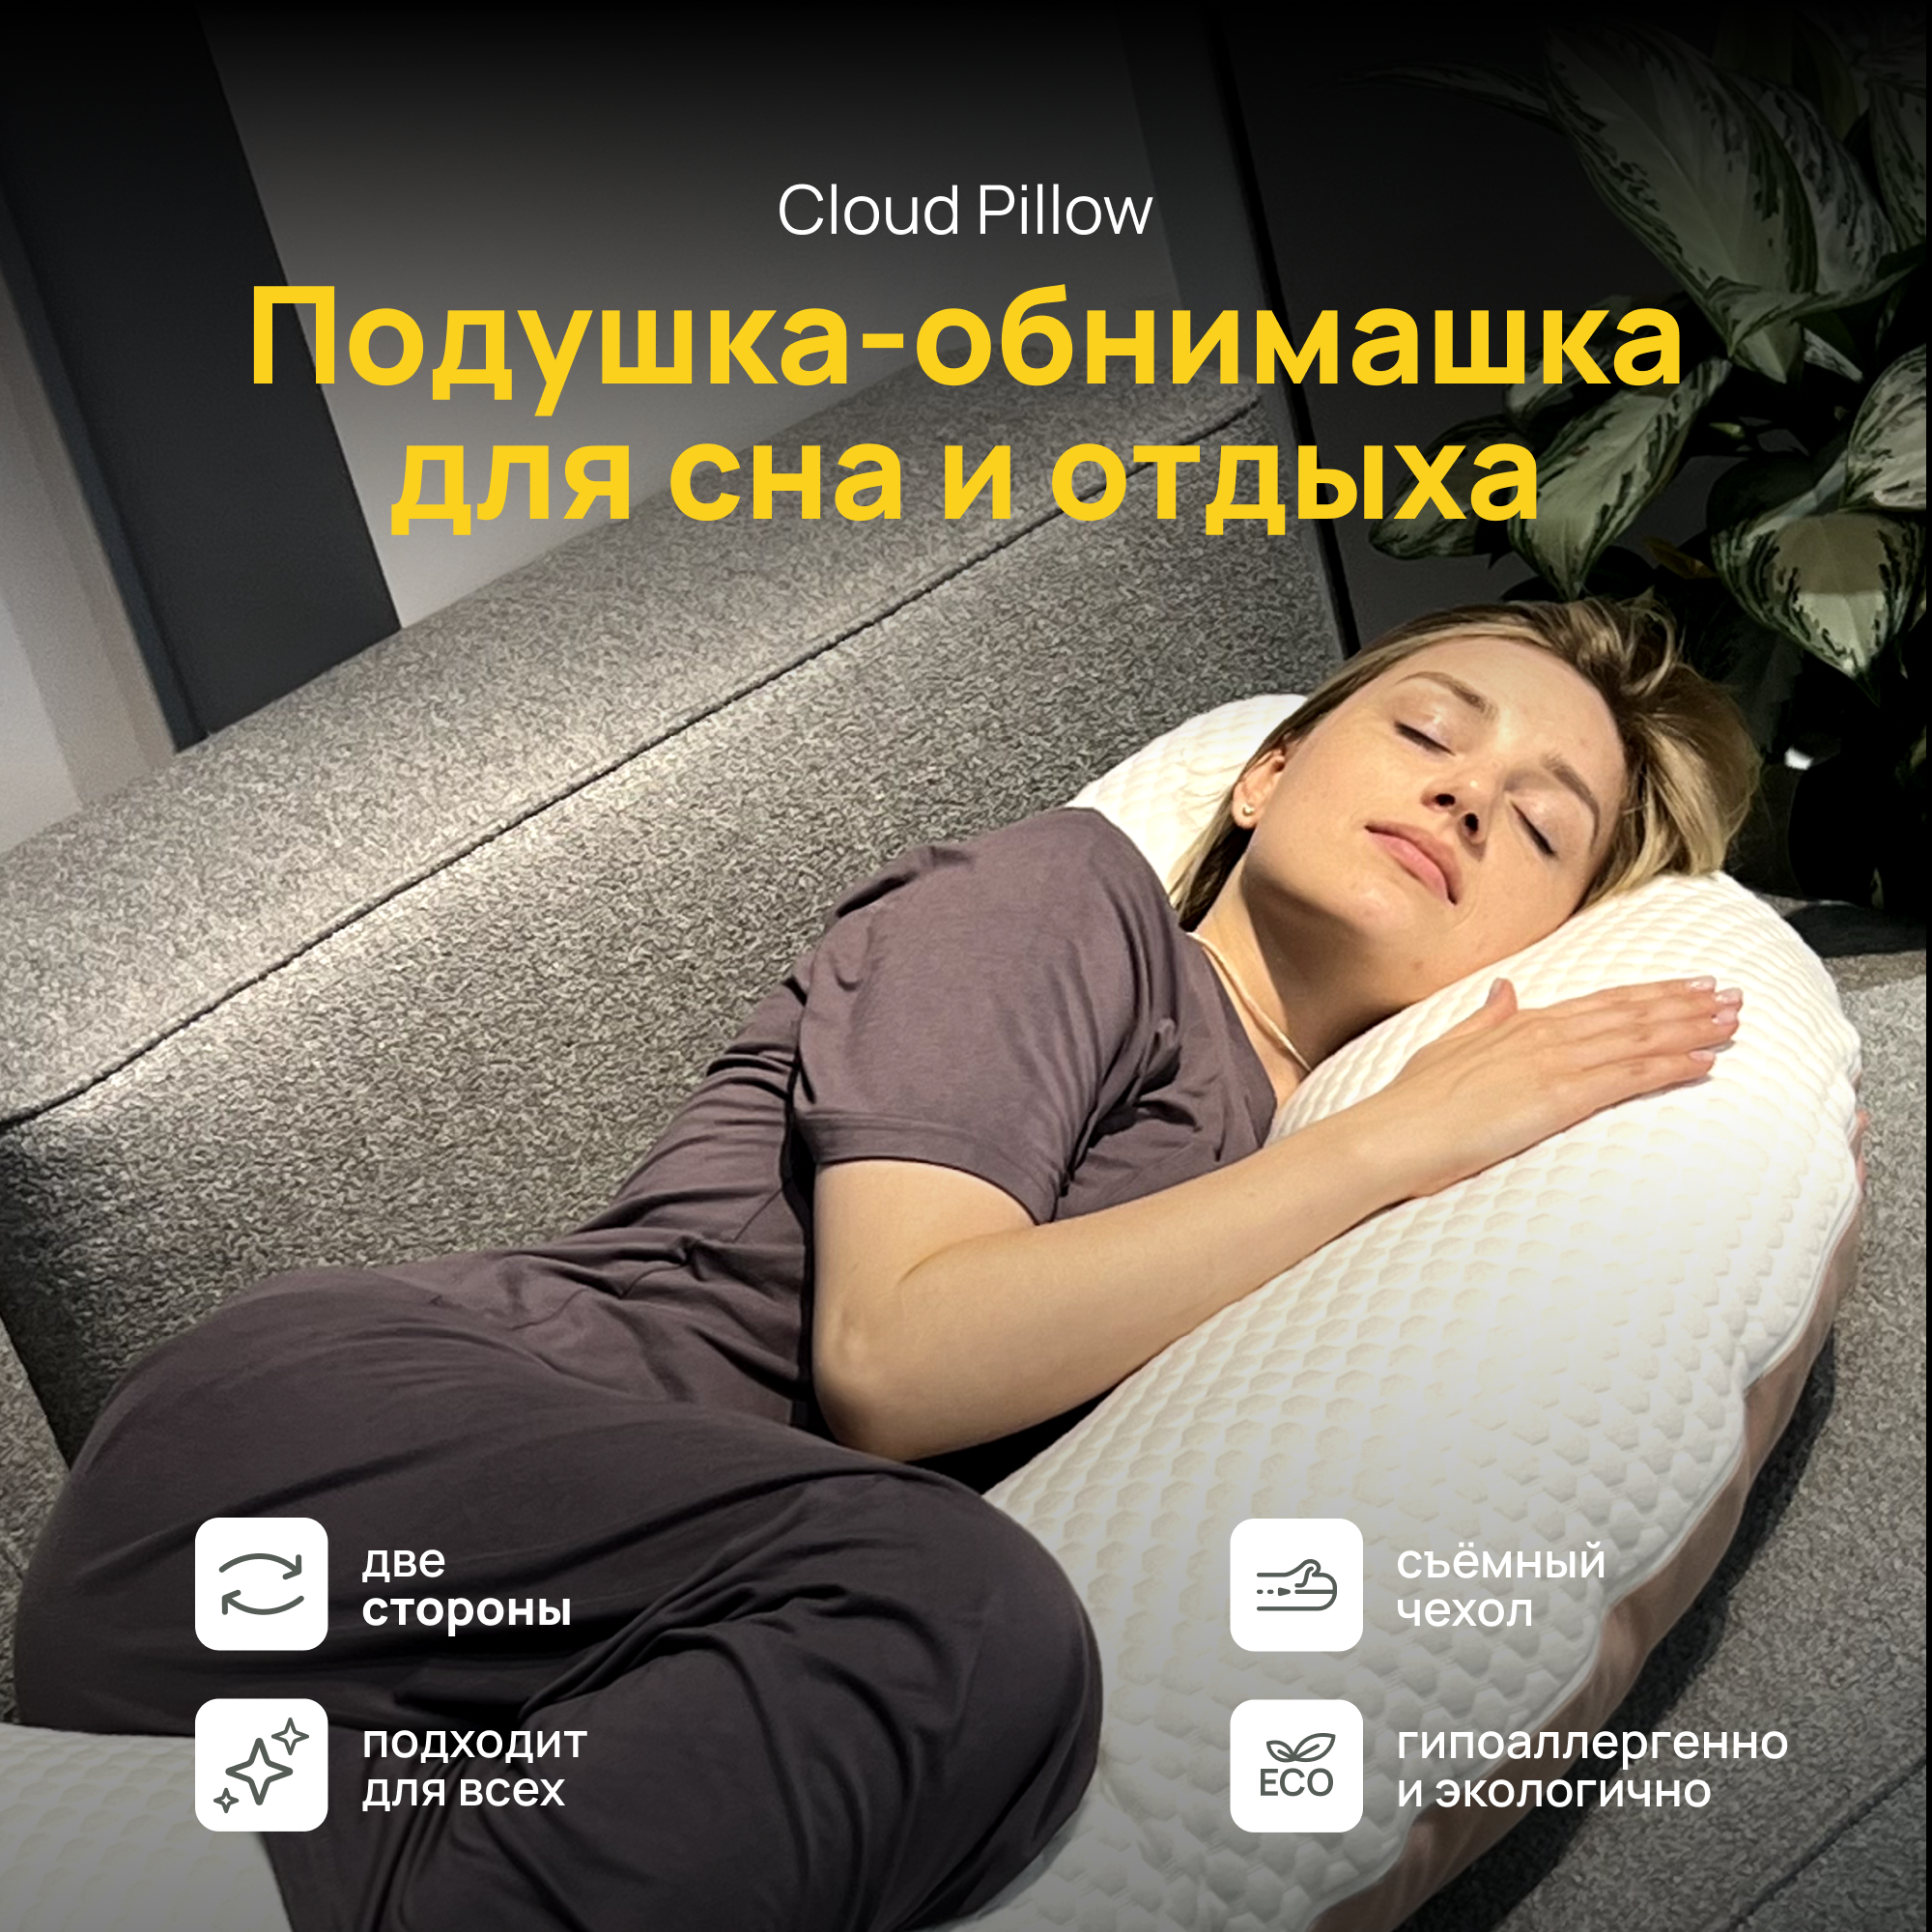 Двусторонняя ортопедическая подушка-обнимашка Cloud Pillow 160 х 35 см, подушка для сна и отдыха, для обнимания, для беременных и кормящих мам